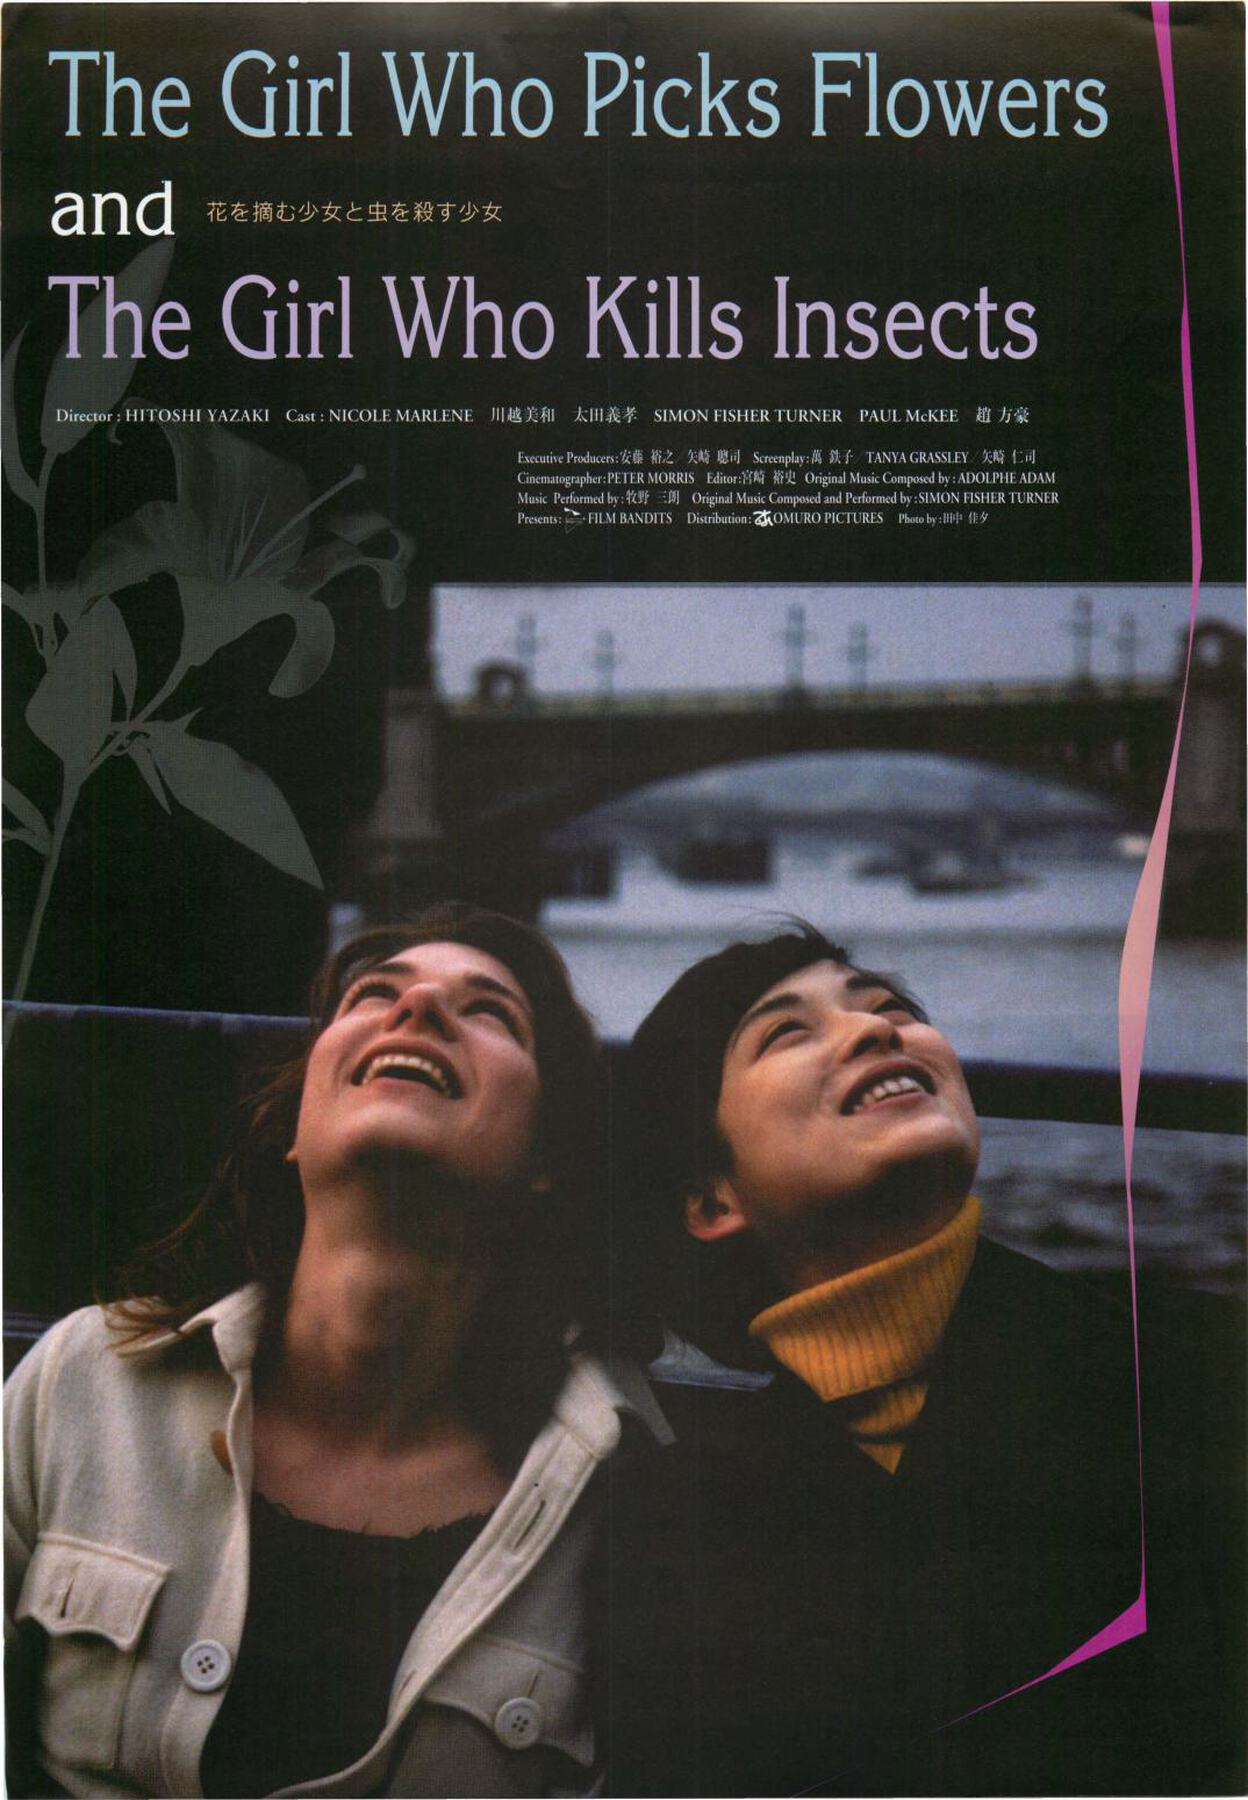 花を摘む少女と虫を殺す少女